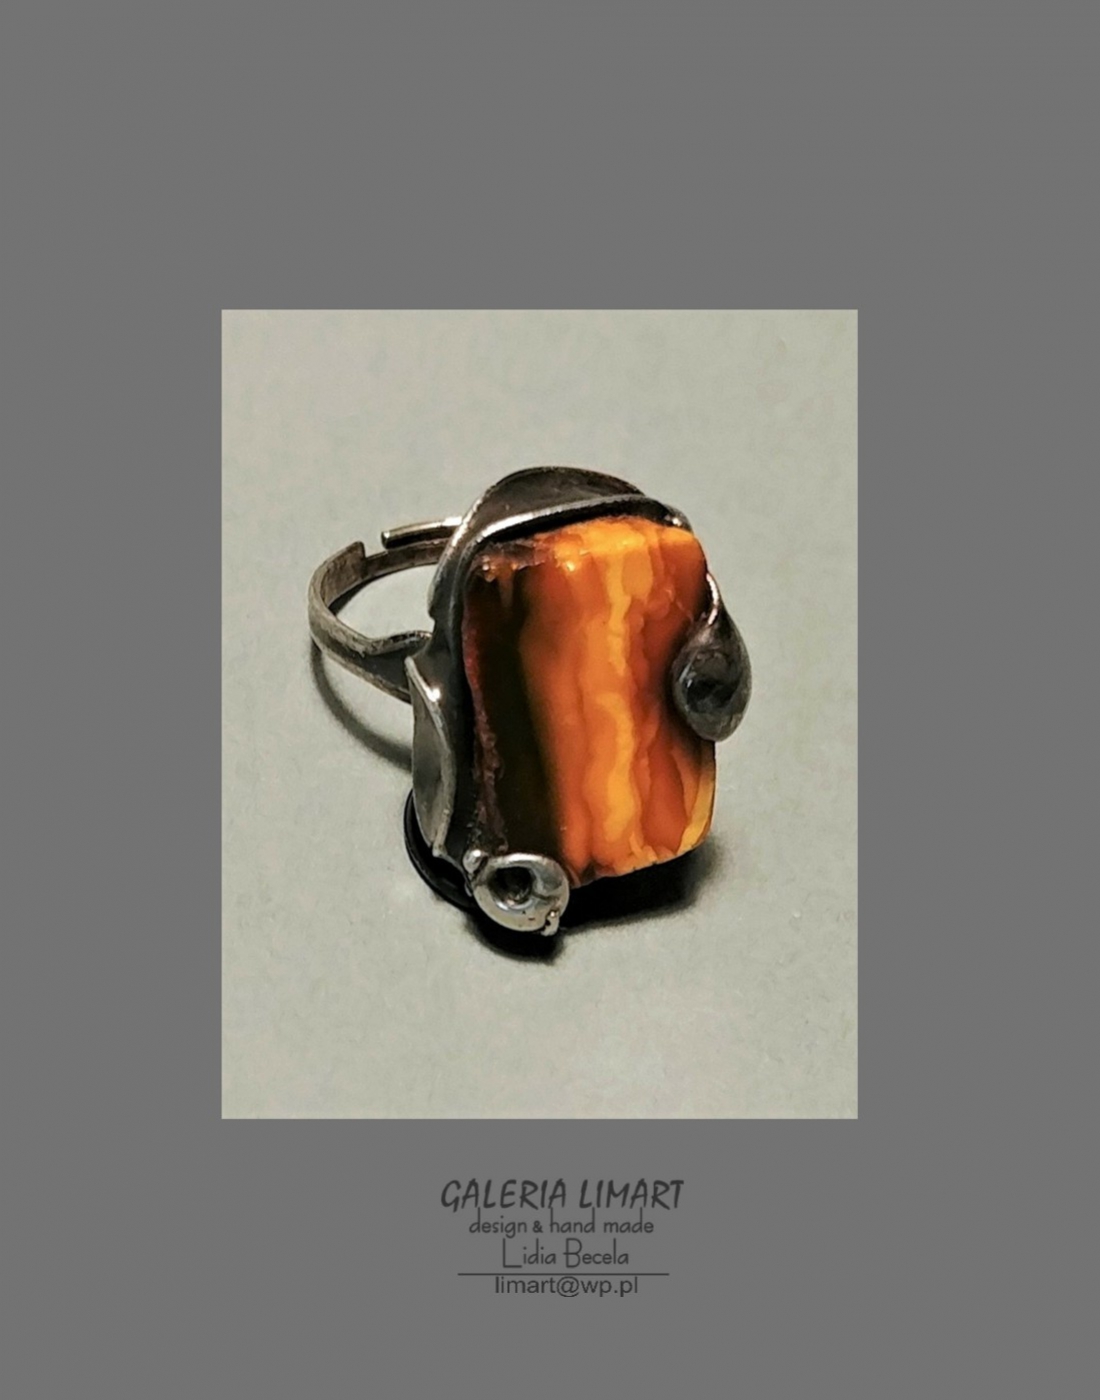 Piękny pierścionek z dorodnej  bryłki bursztynu bałtyckiego o pięknym niezwykłym ubarwieniu